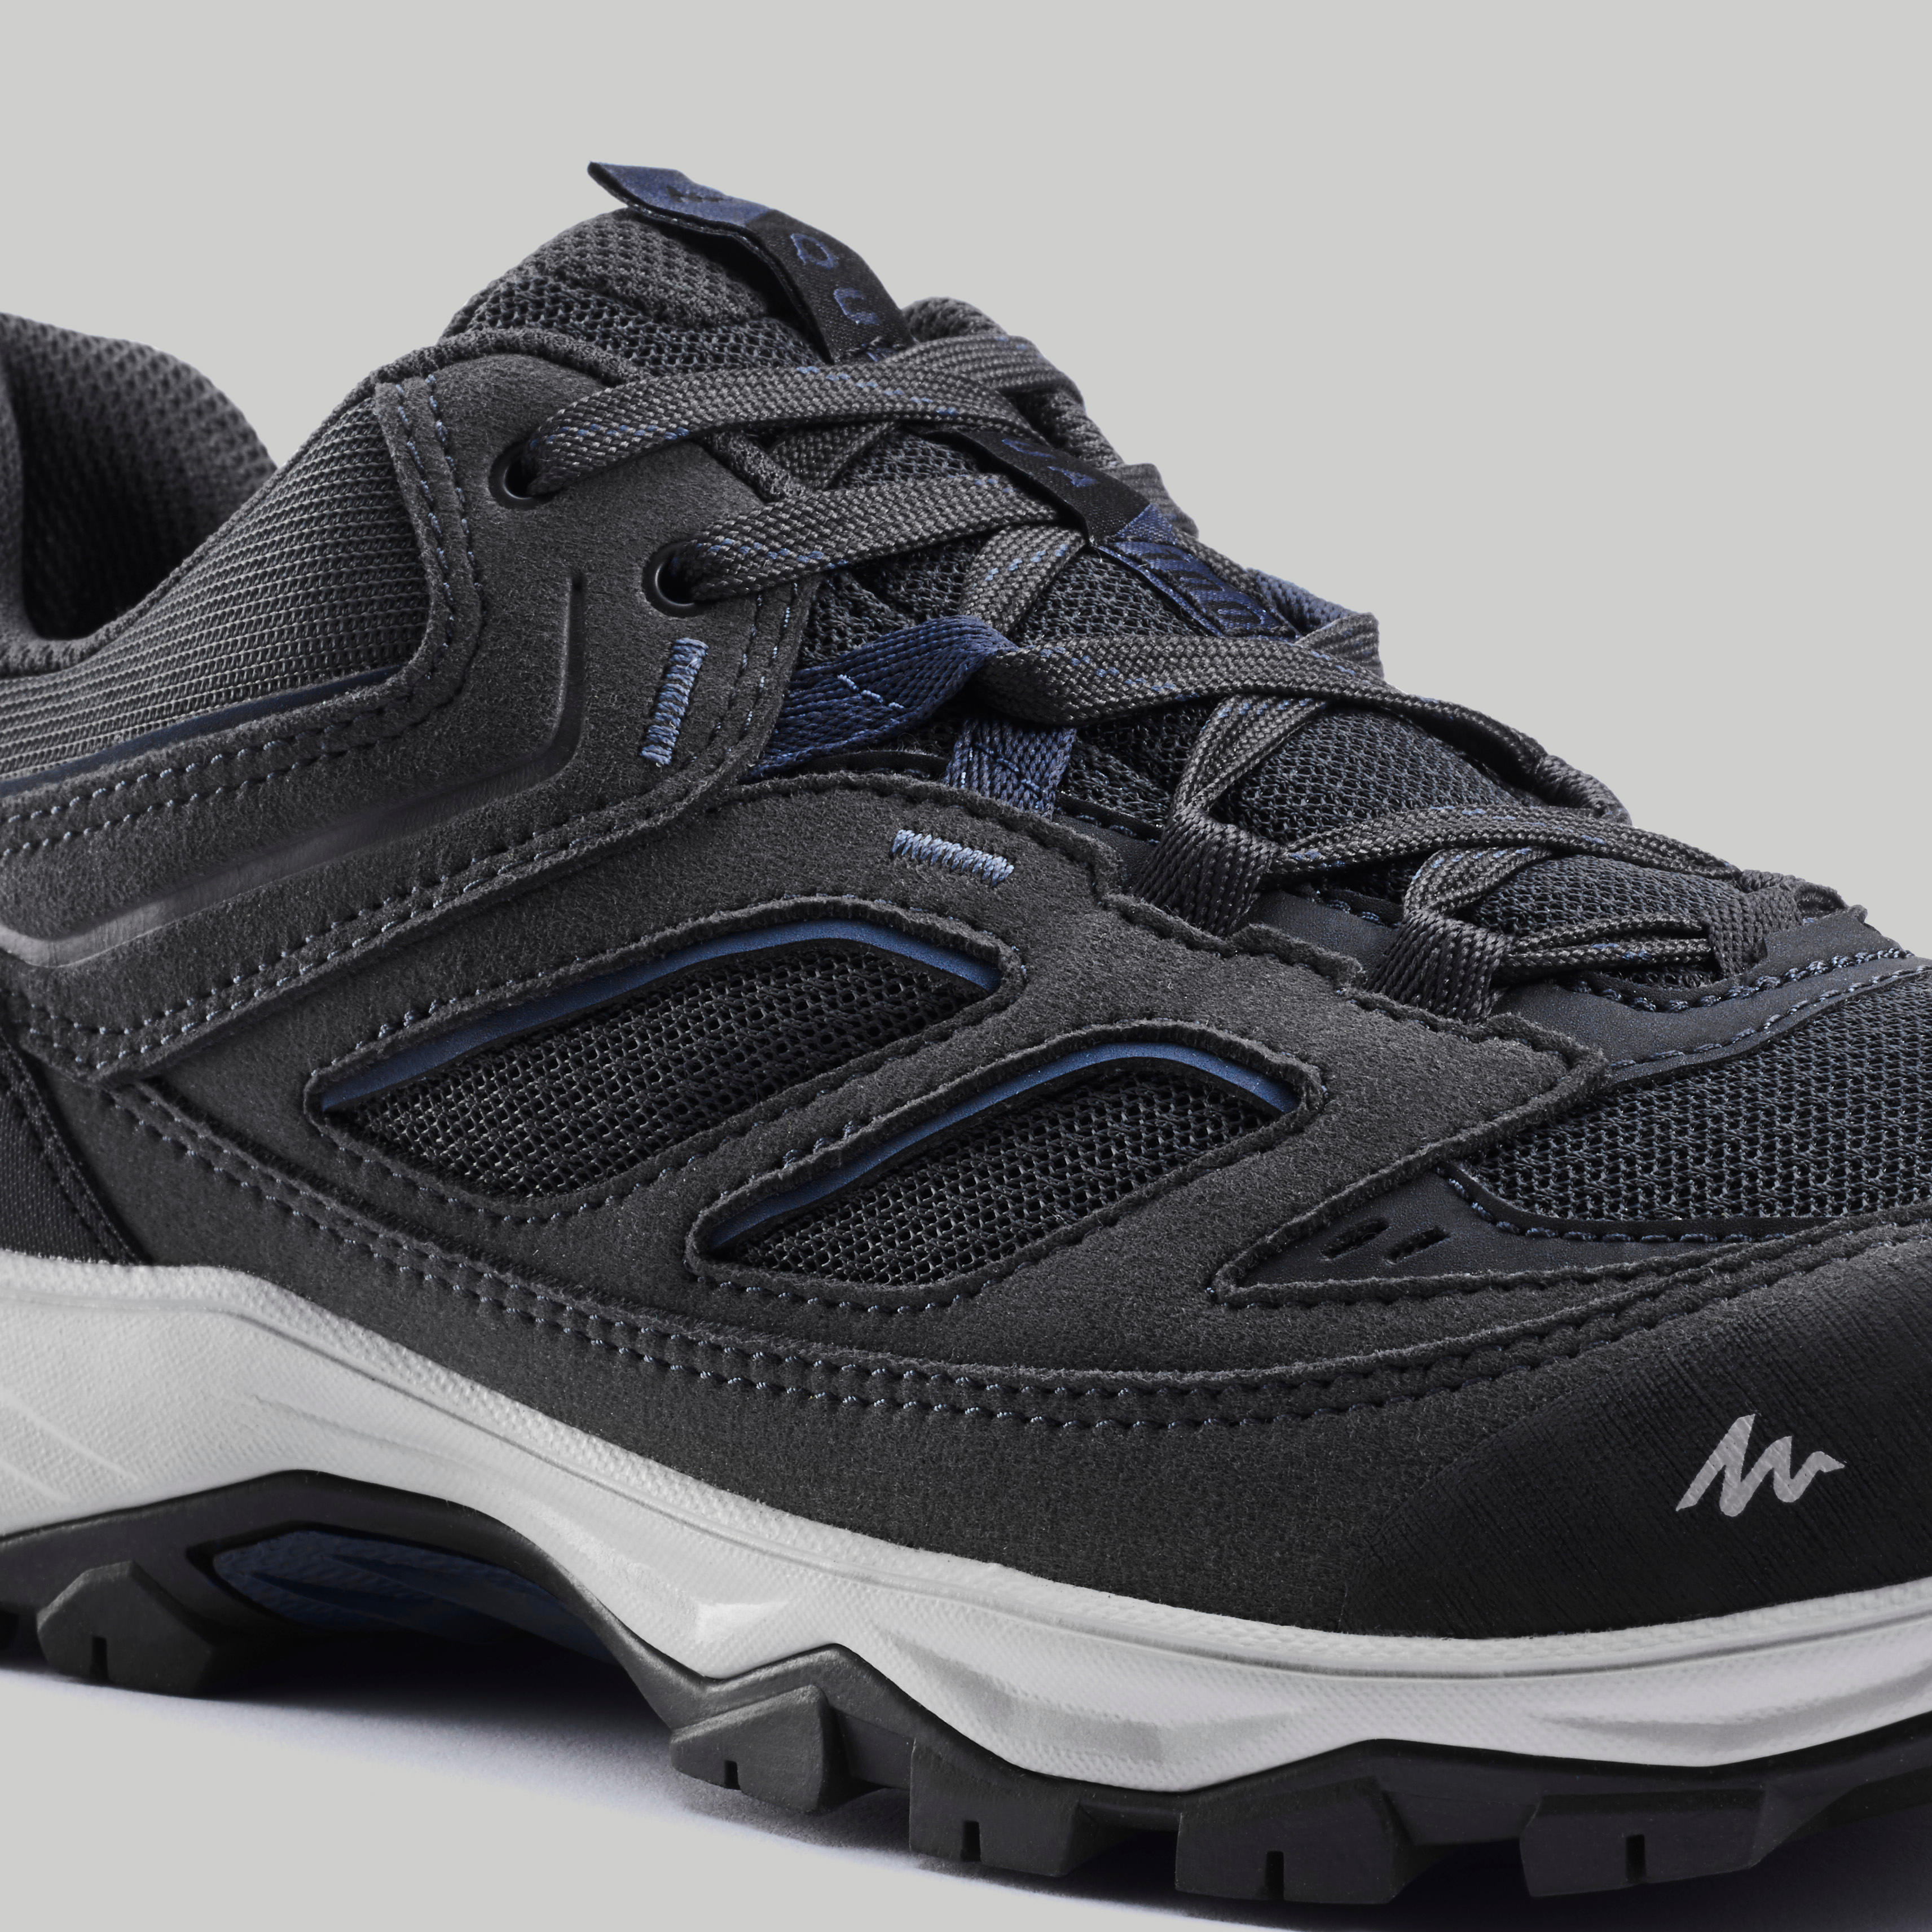 Chaussures de randonnée homme – MH 100 gris - QUECHUA